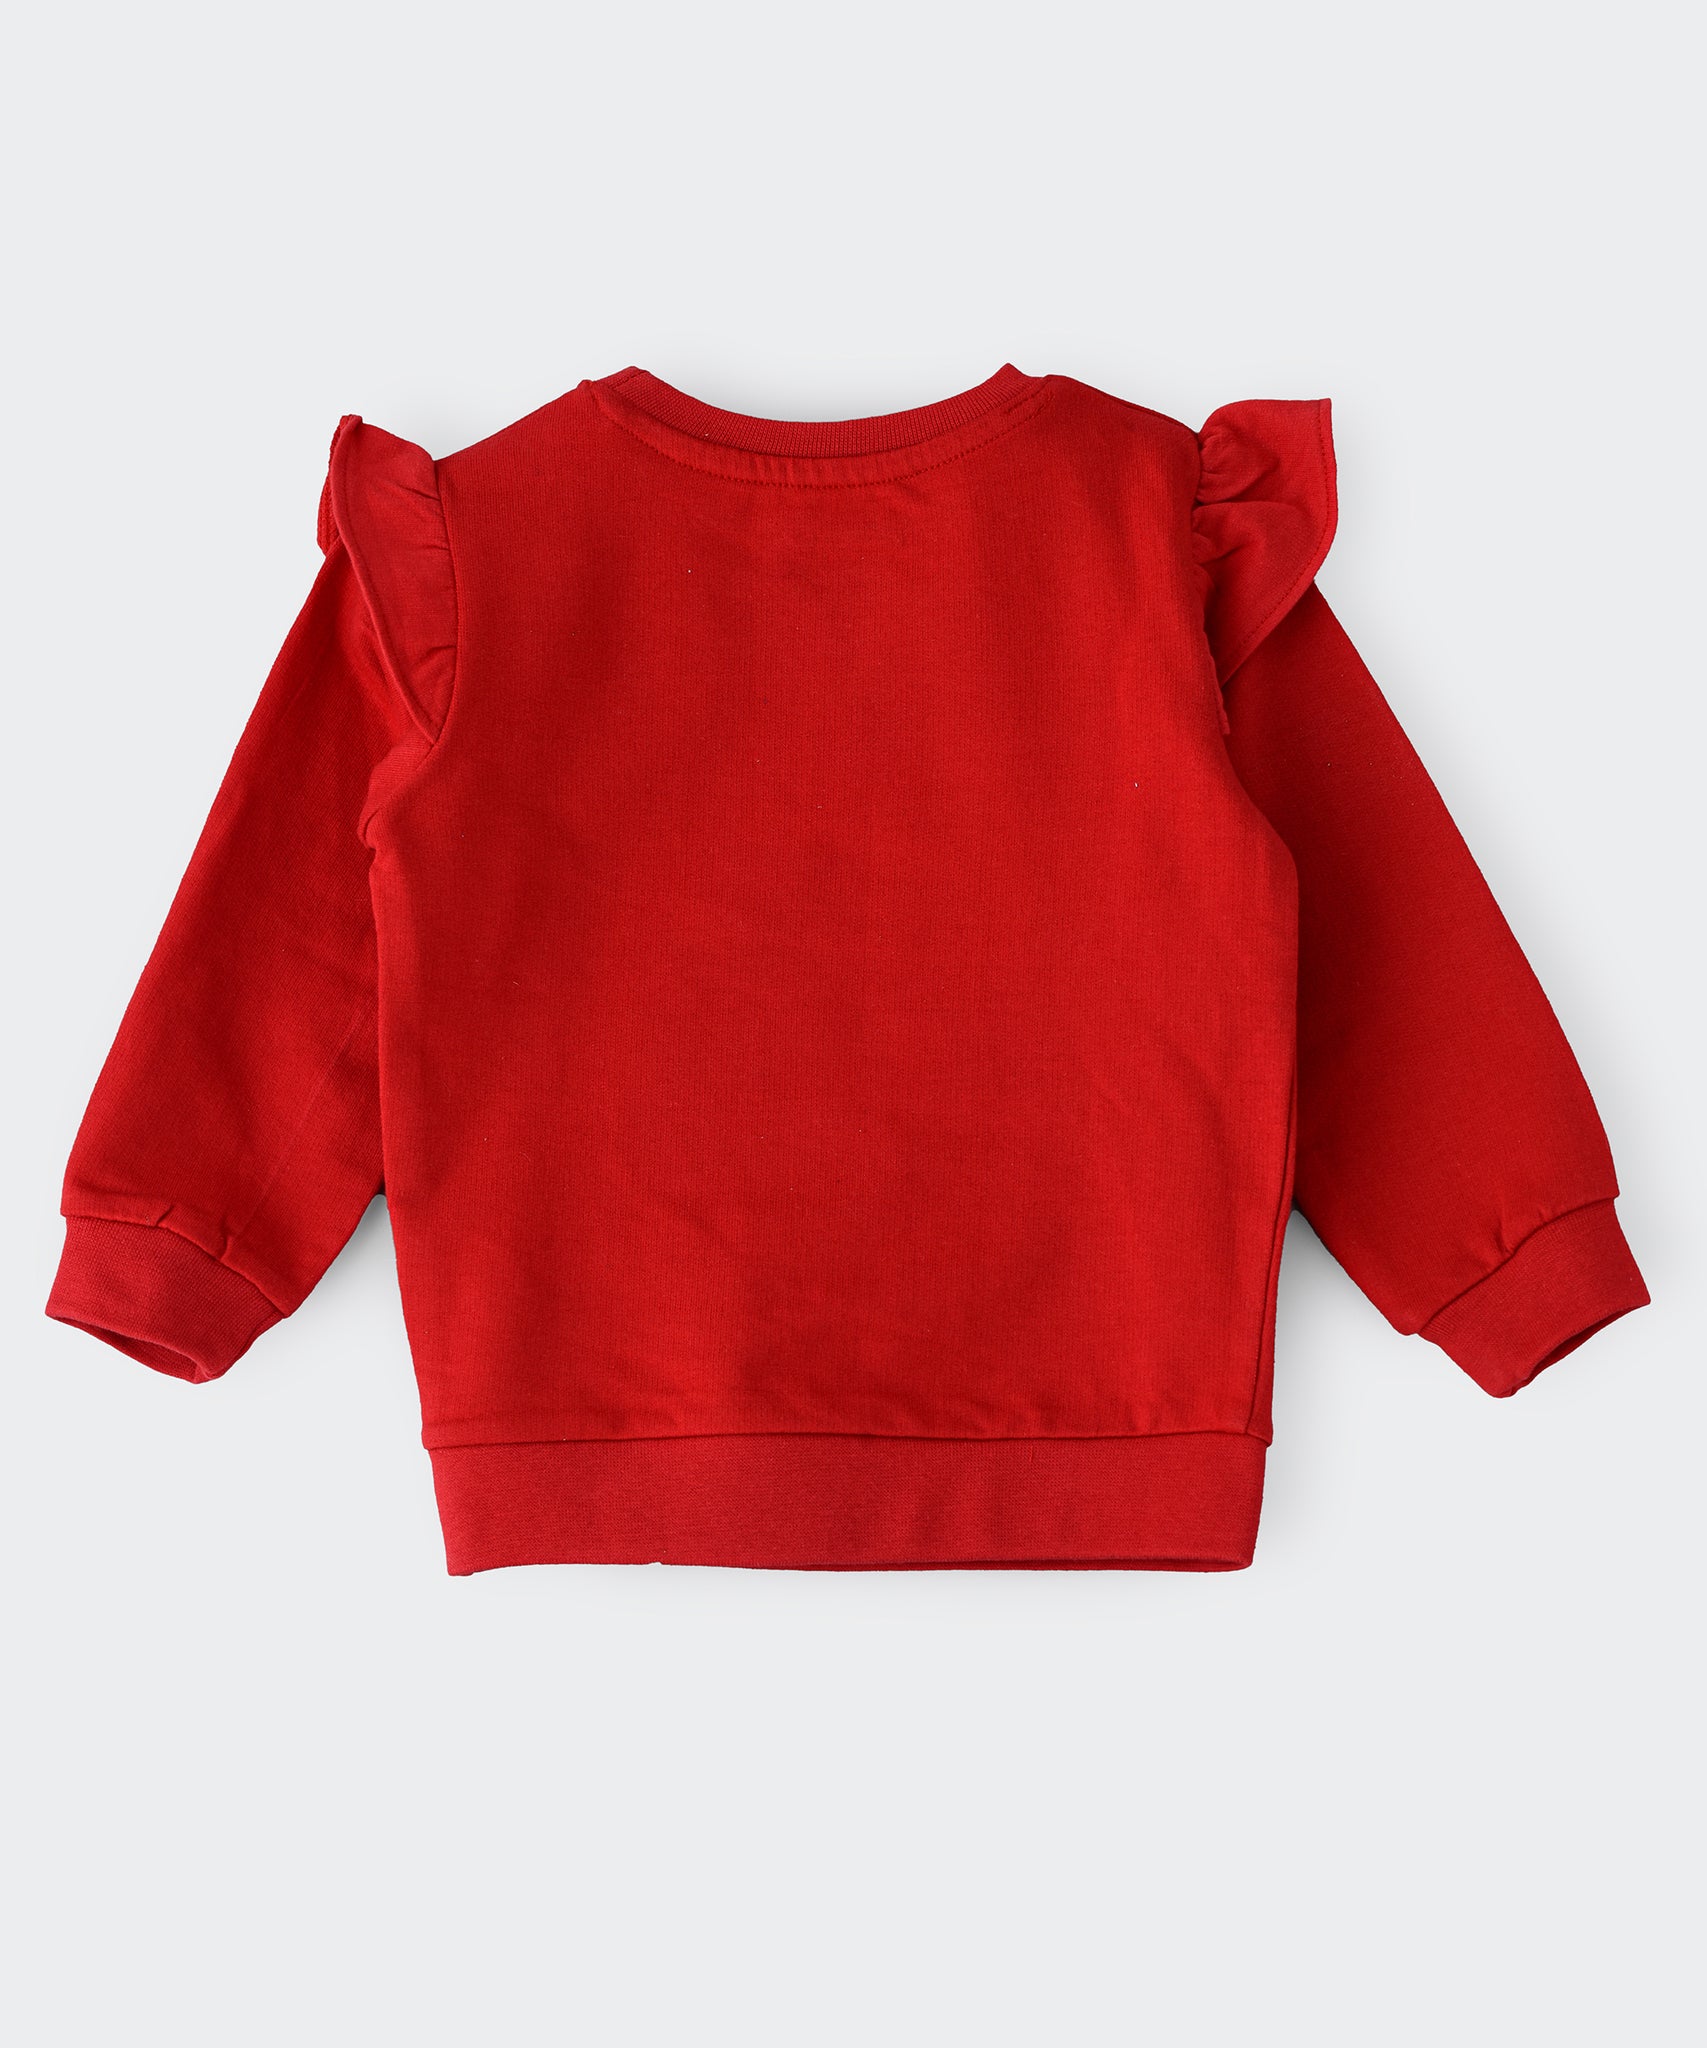 Tweety Infant Girls Sweatshirt